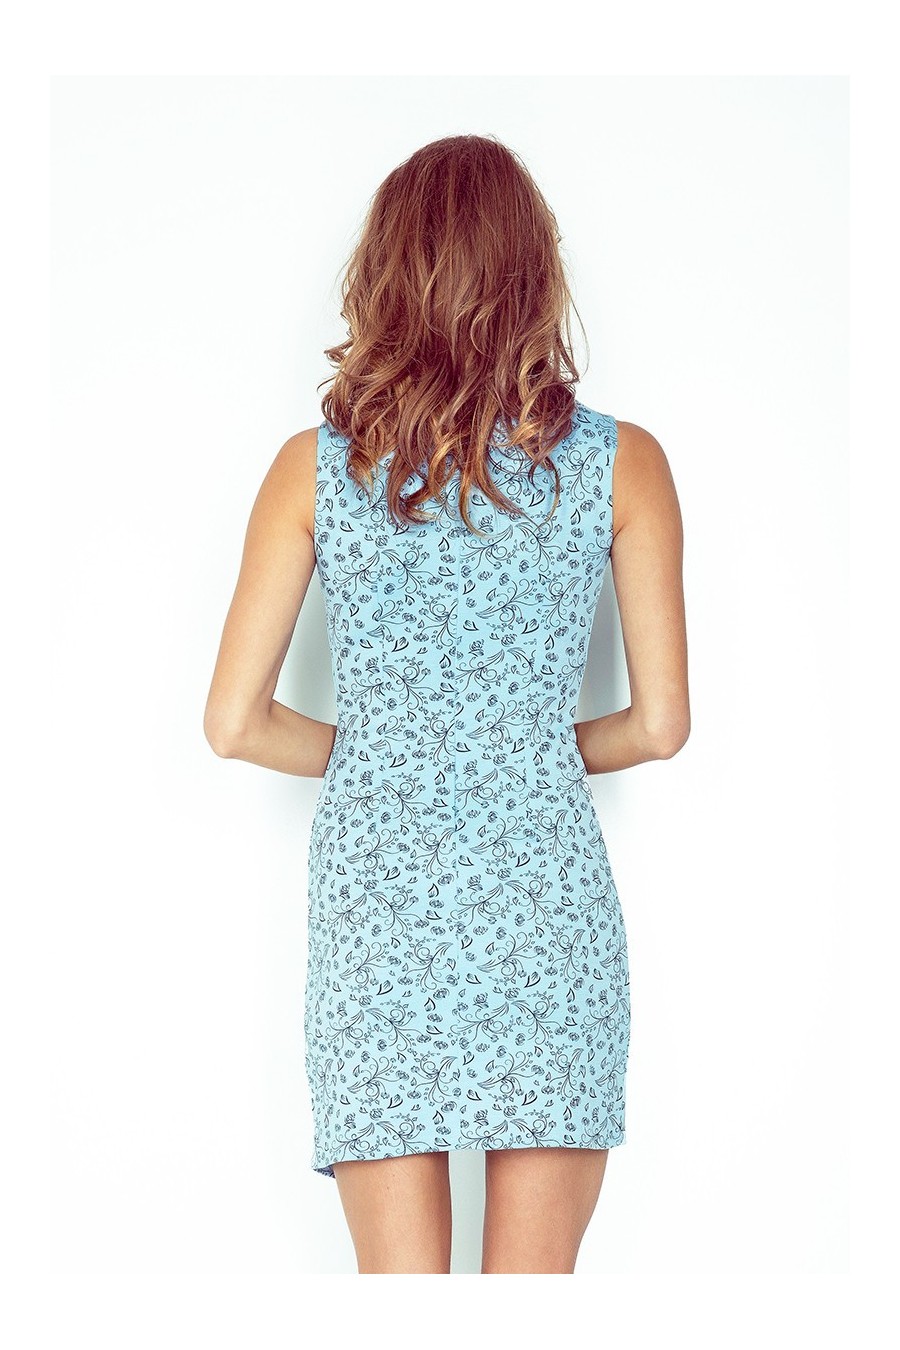 MM 004-5 Asymetrické šaty - světle modrá + černá květiny - BIG SALE! %